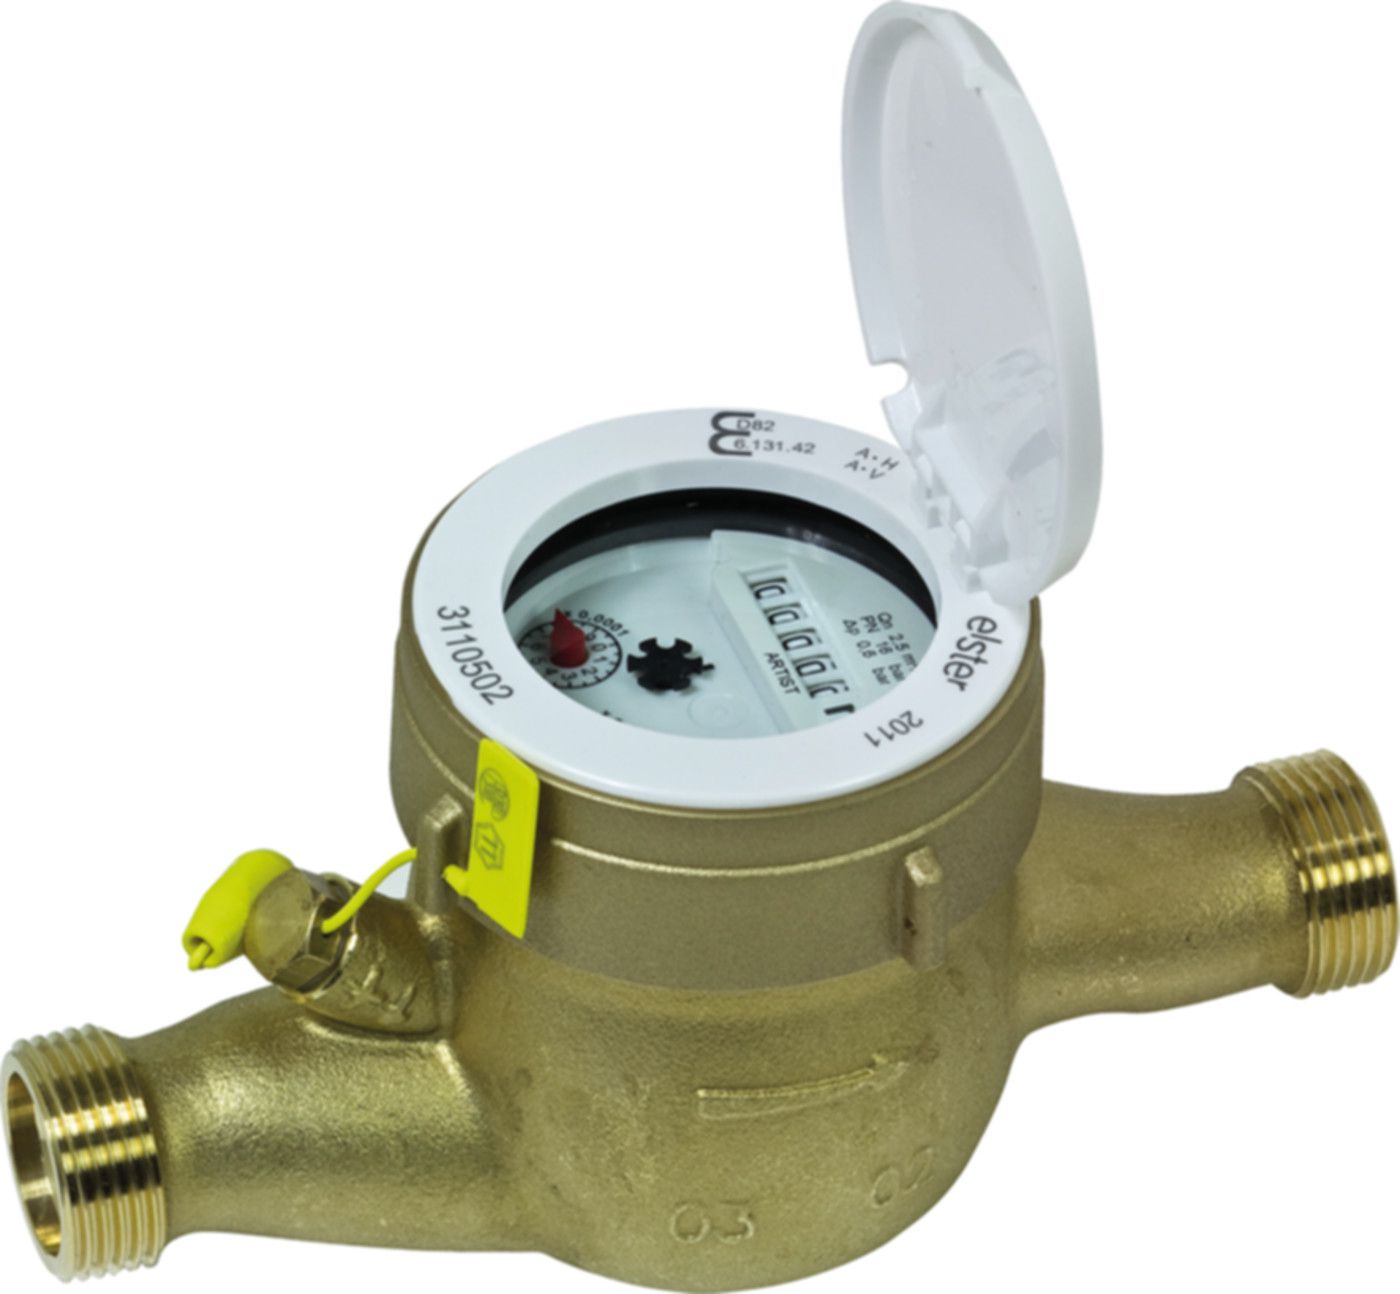 Hauswasserzähler kalt S 2.5 m3/h L = 105 mm G 1" blombiert 16782 - ISTA - Wärme- / Wasserzähler